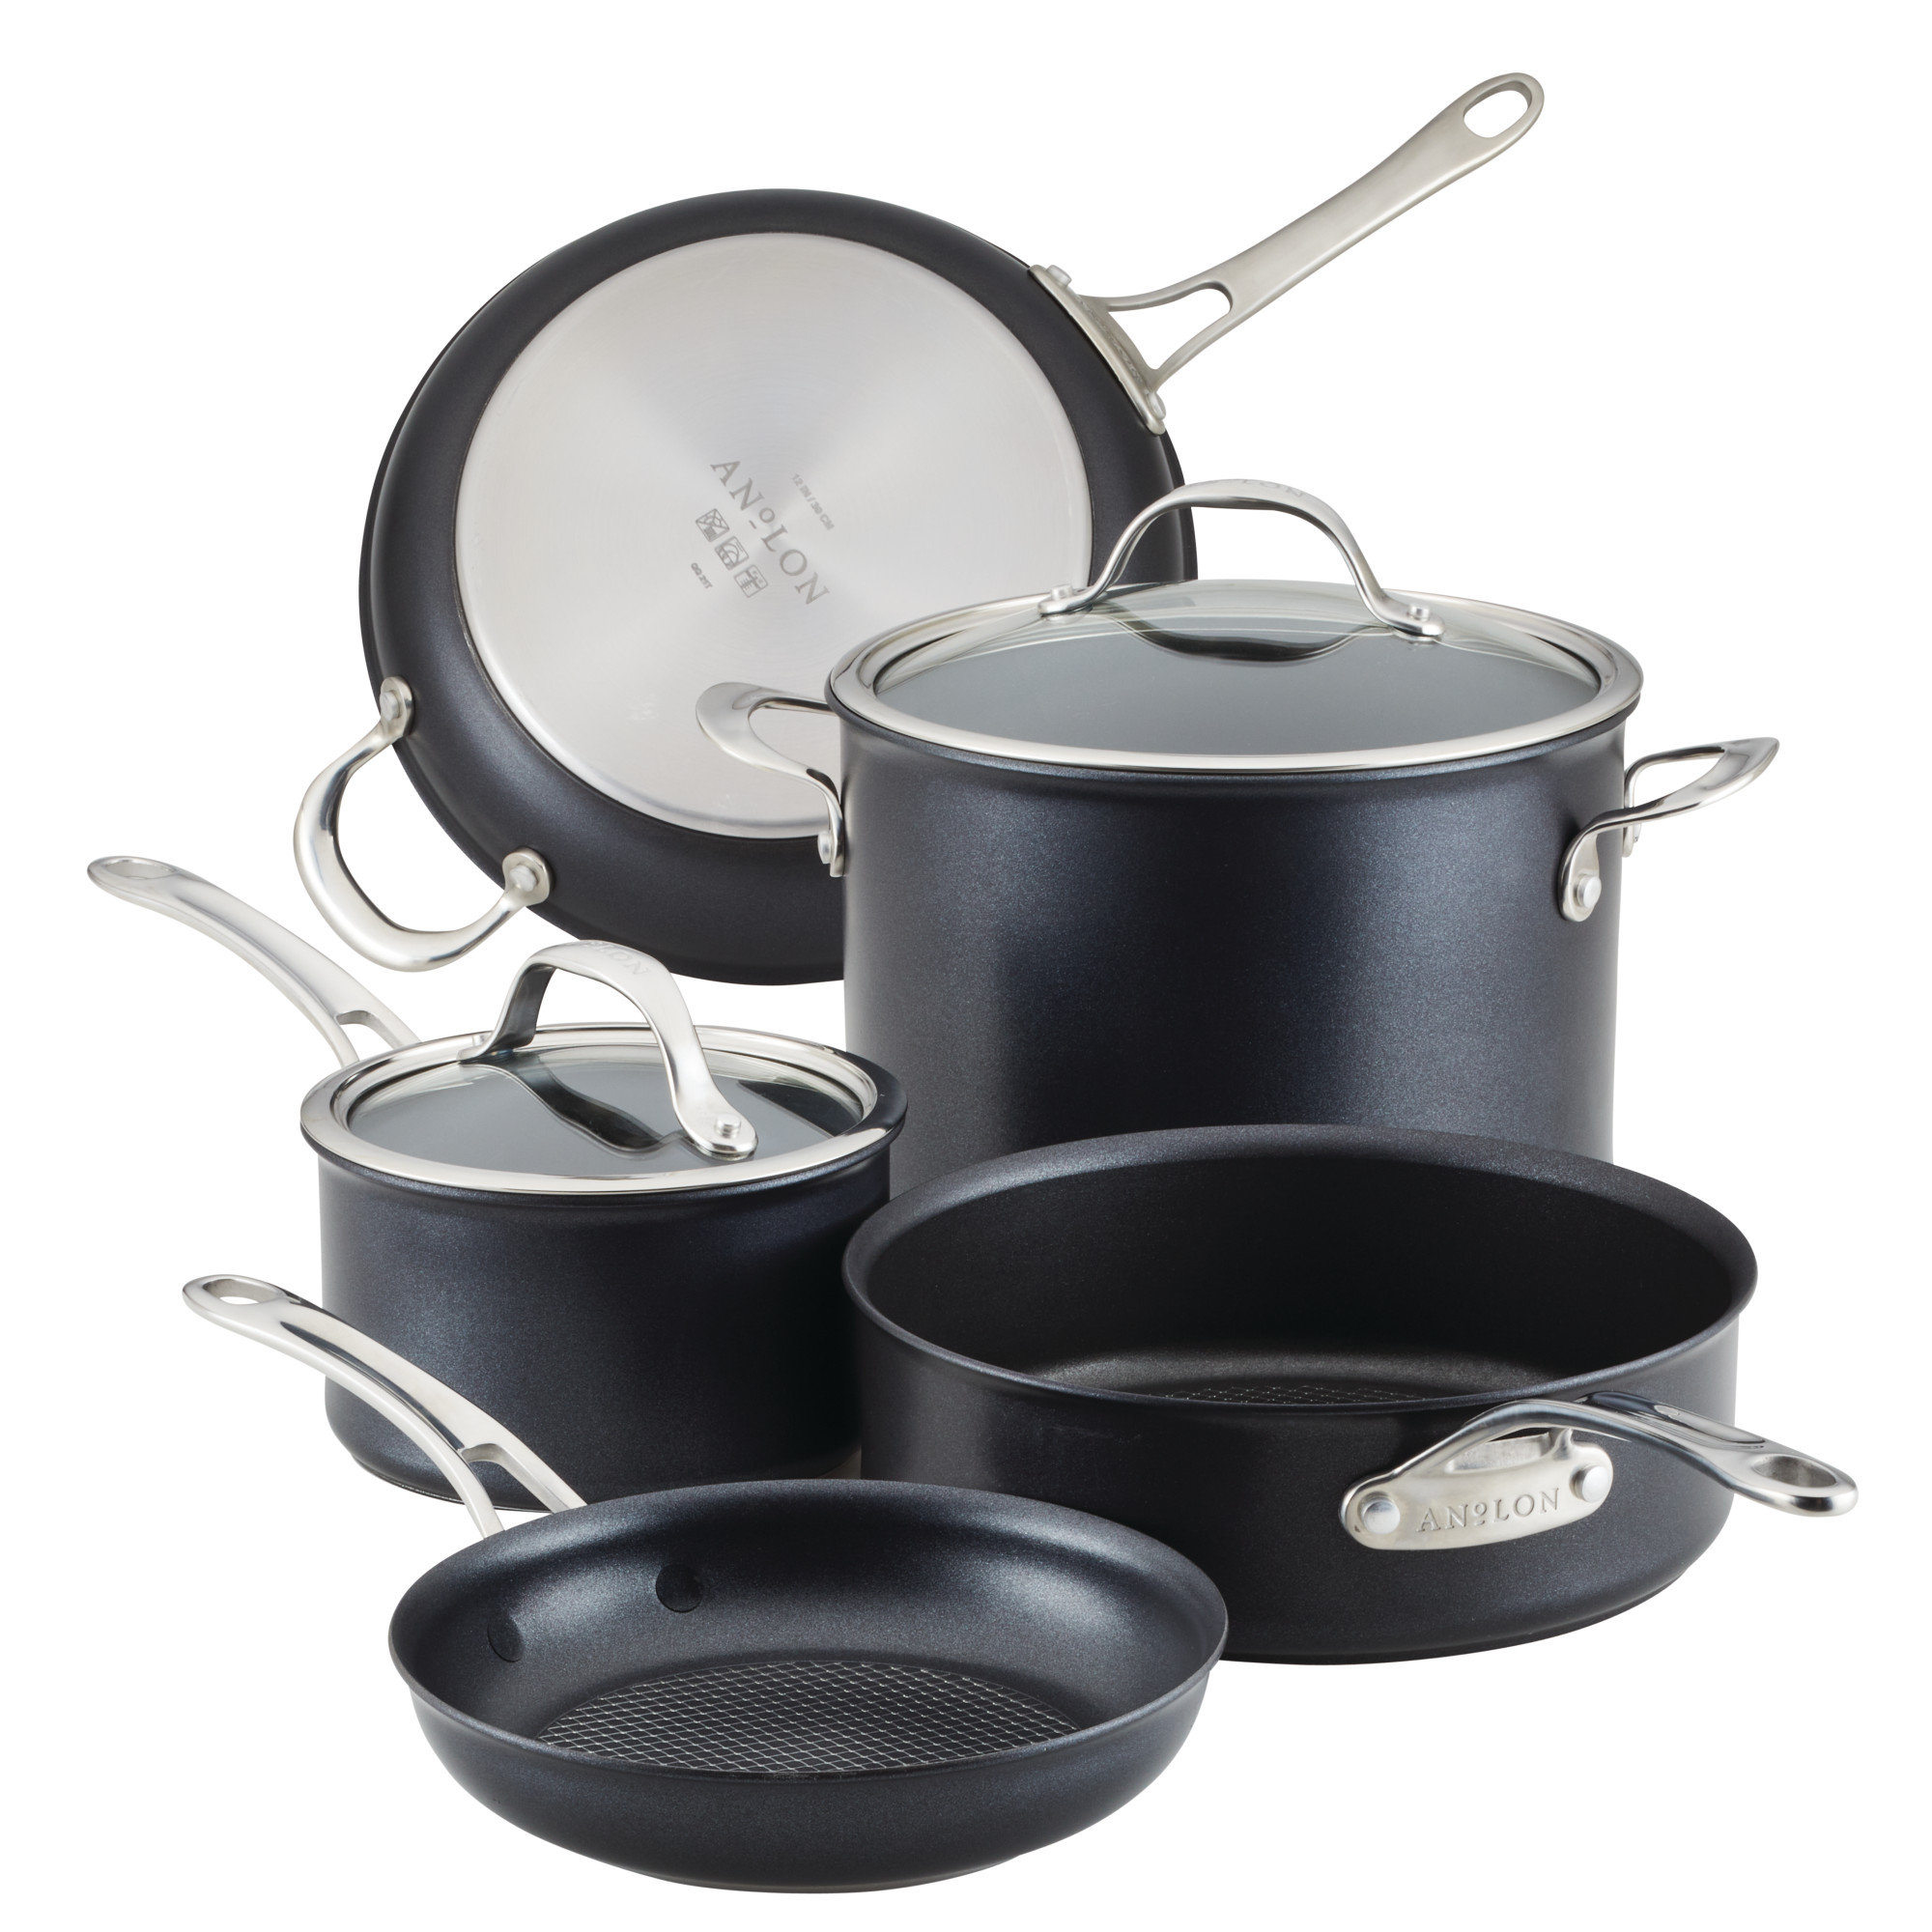 https://assets.wfcdn.com/im/80777341/compr-r85/2336/233684607/anolon-x-hybrid-nonstick-cookware-induction-pots-and-pans-set-7-piece-dark-gray.jpg